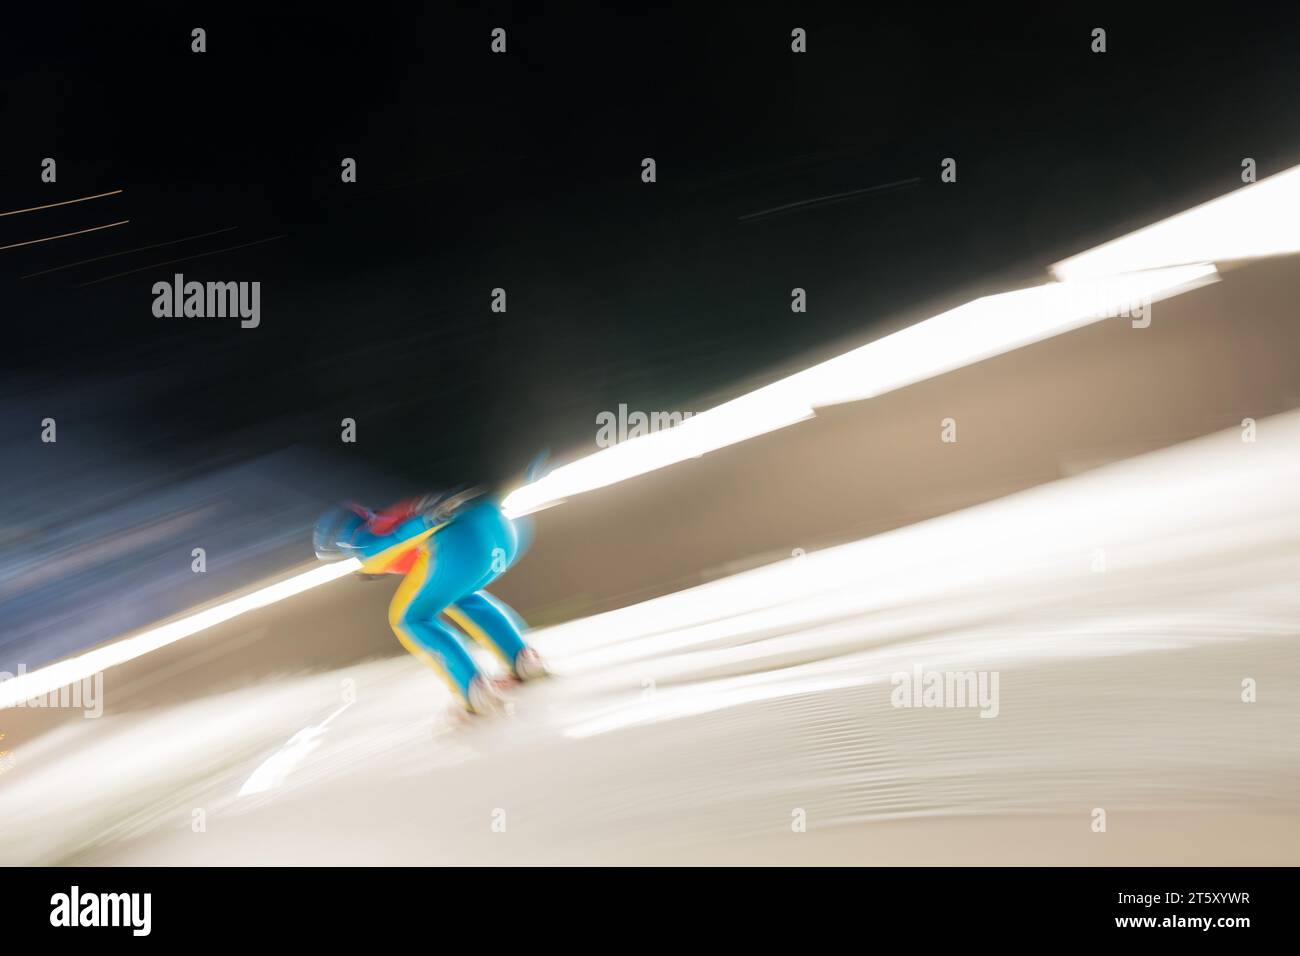 Skispringen allgemein FIS Welt Cup Skispringen der Frauen in Hinterzarten, Deutschland AM 15.12.2017 Foto Stock